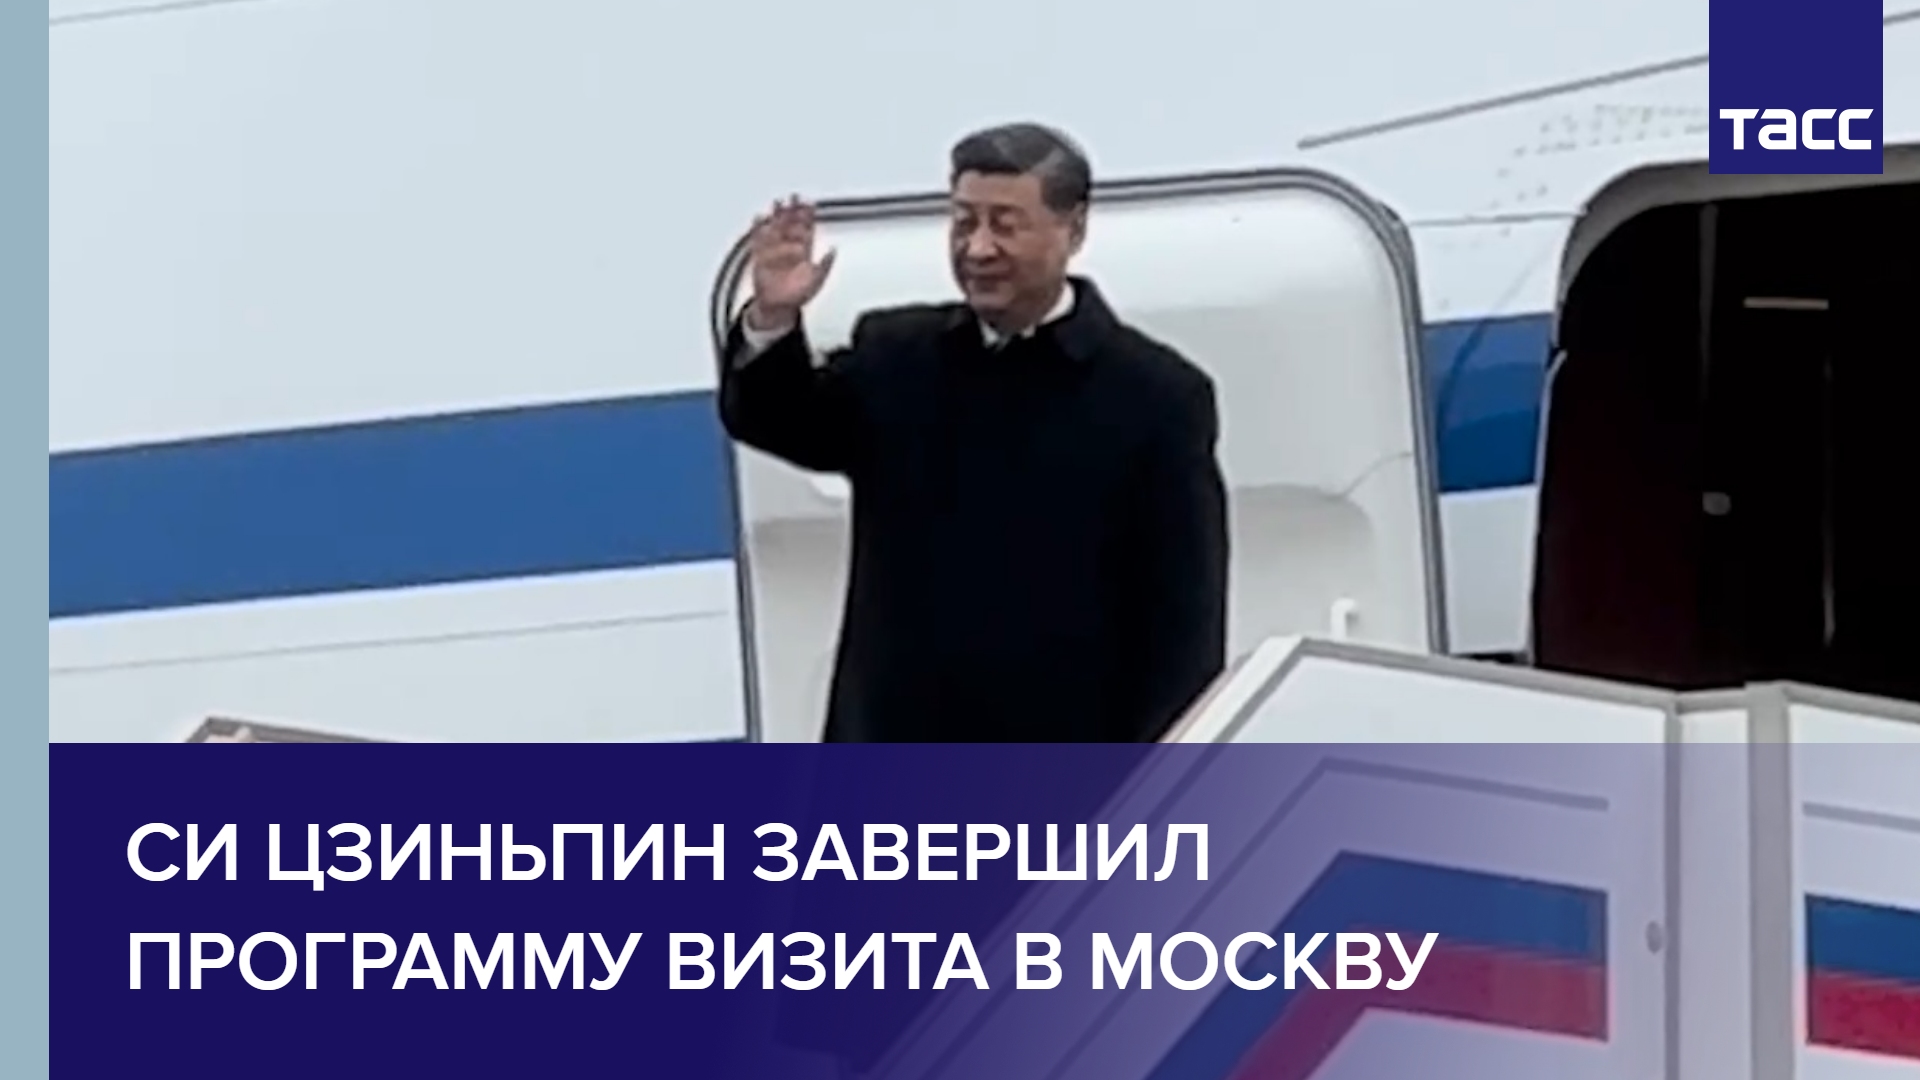 Си Цзиньпин завершил программу визита в Москву и отбыл из России